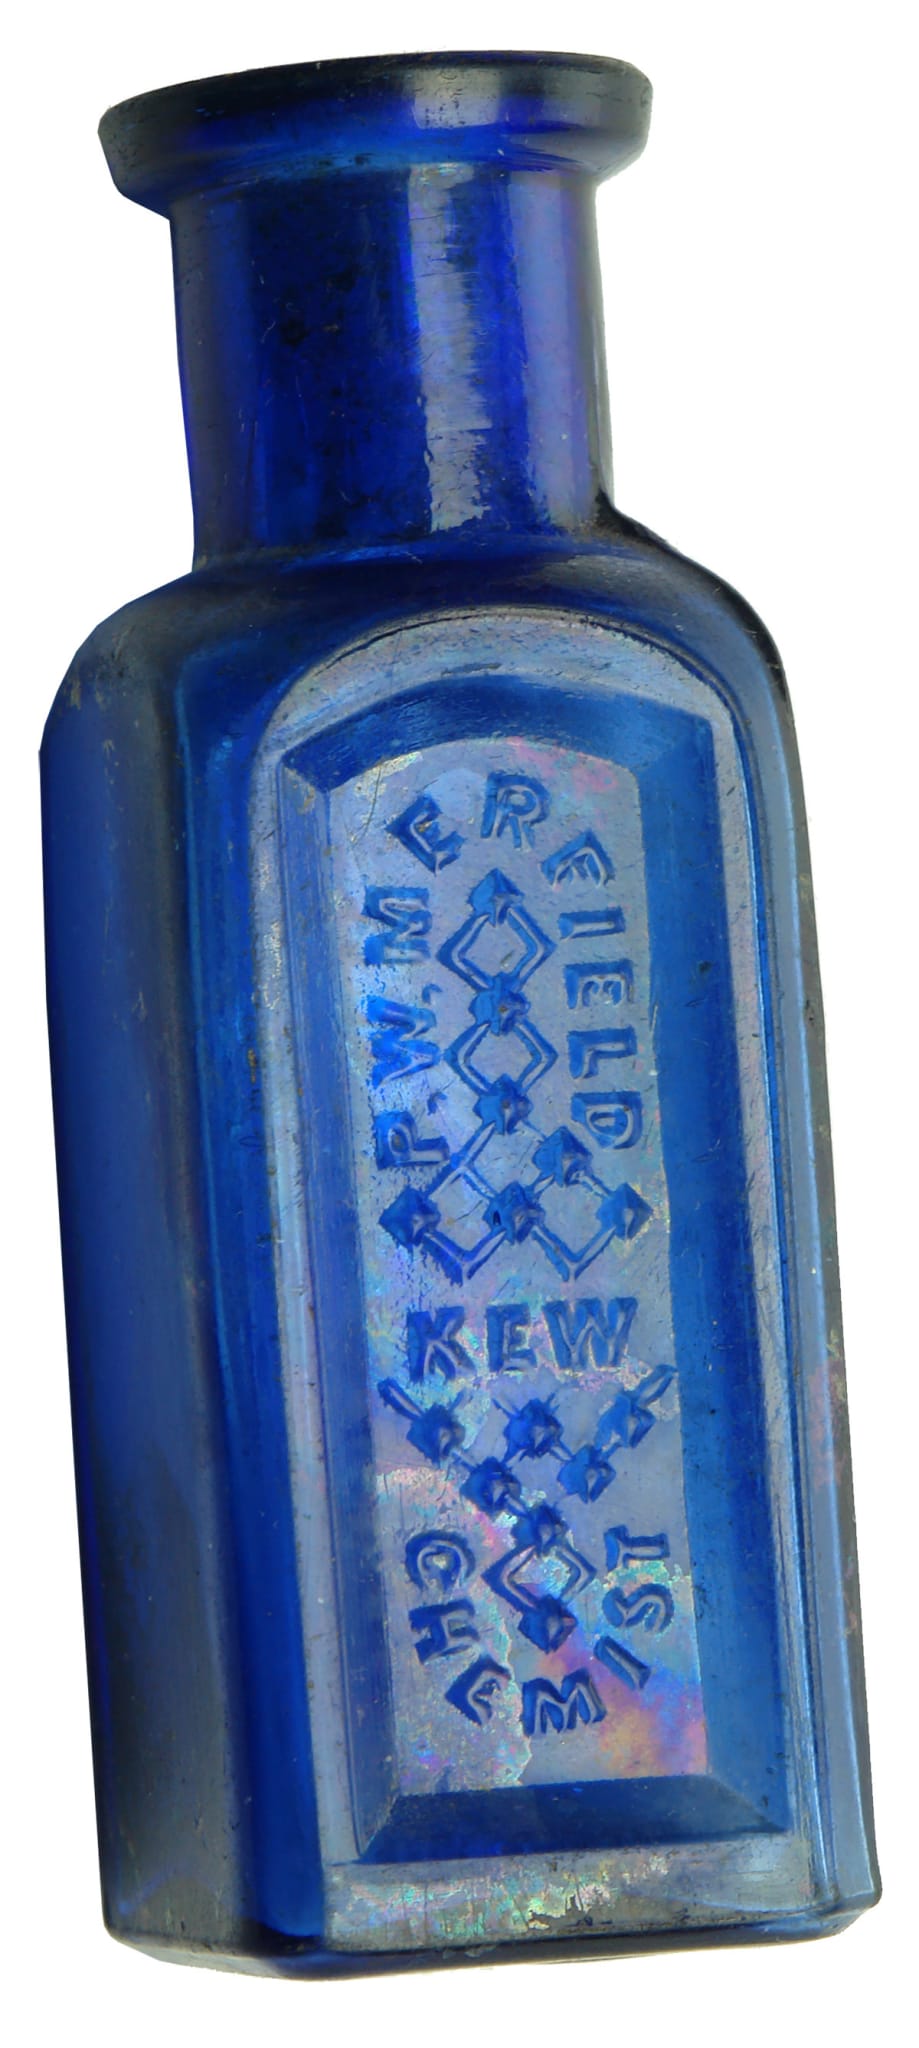 Merfield Kew Antique Blue Poison Bottle